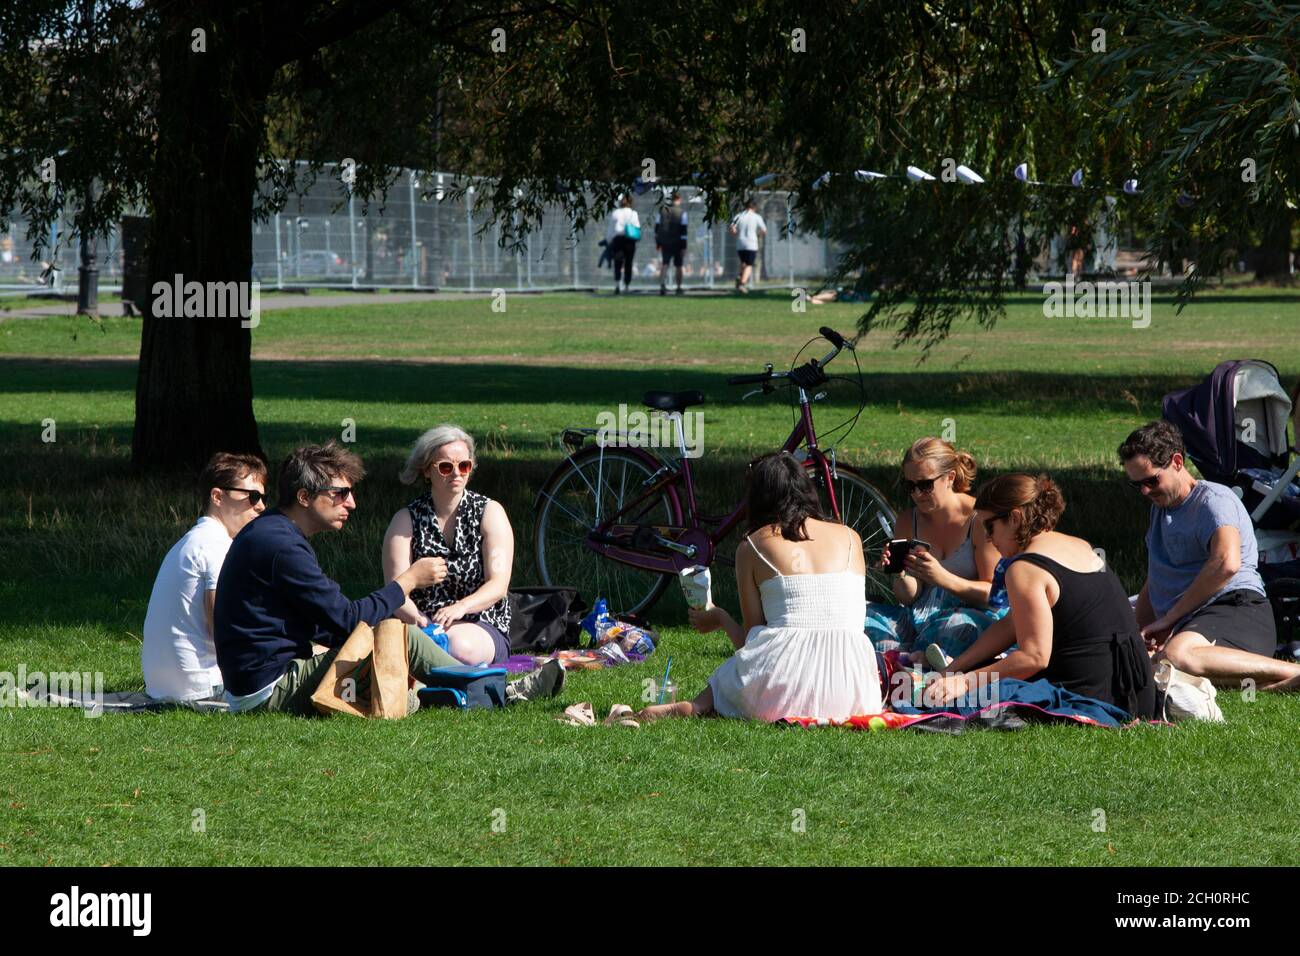 Londra, Regno Unito. 13 settembre 2020: I londinesi hanno approfittato del tempo soleggiato per fare un picnic a Clapham Common. Da domani un gruppo di 7 incontri come questo sarà illegale in quanto le regole di allontanamento sociale cambieranno. Anna Watson/Alamy Notizie dal vivo Foto Stock